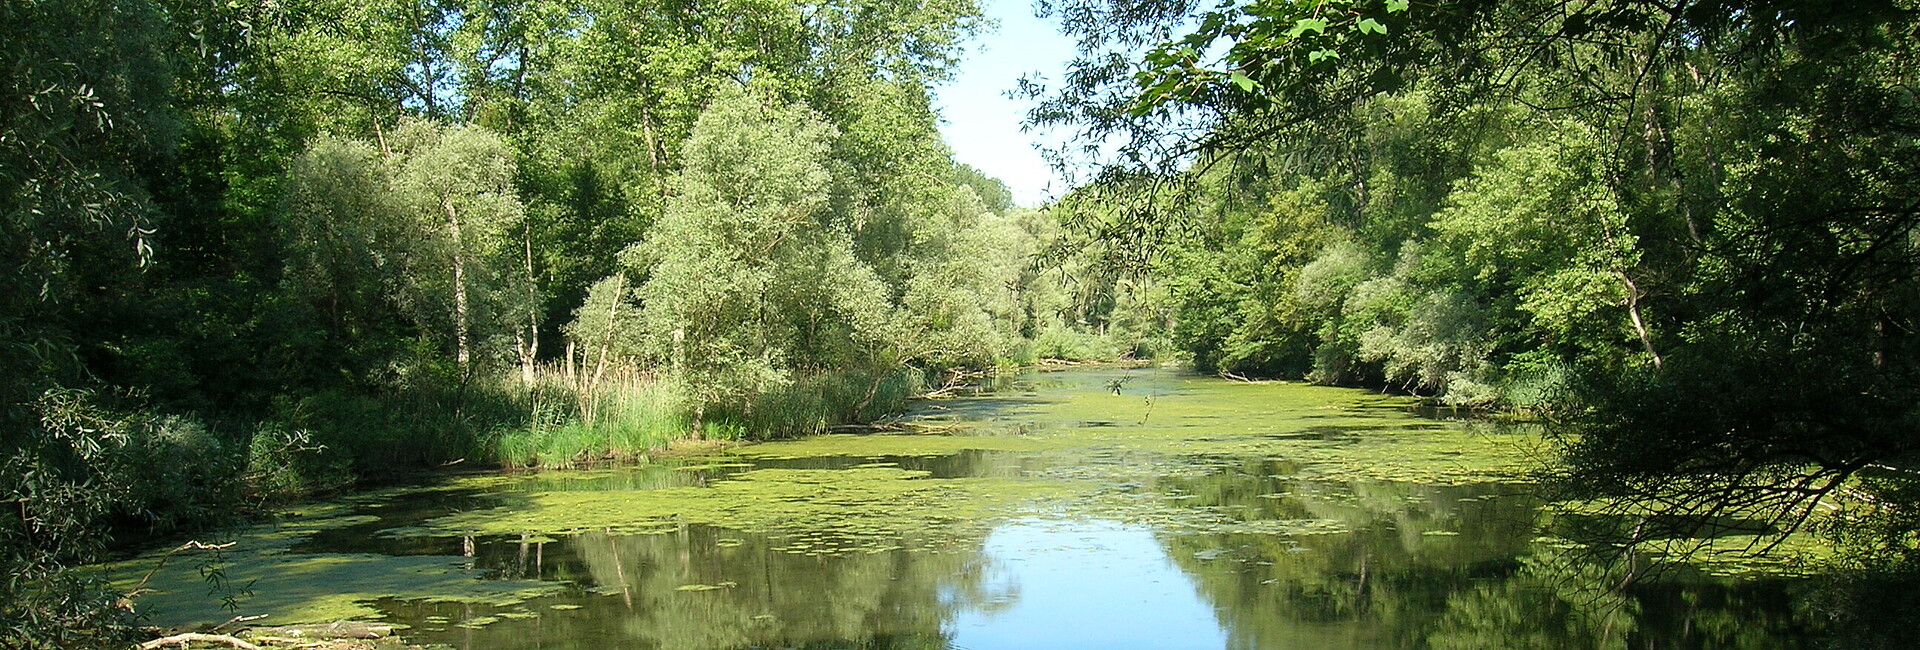 Altrheinarm bei Dettenheim-Rußheim mit Auenvegetation